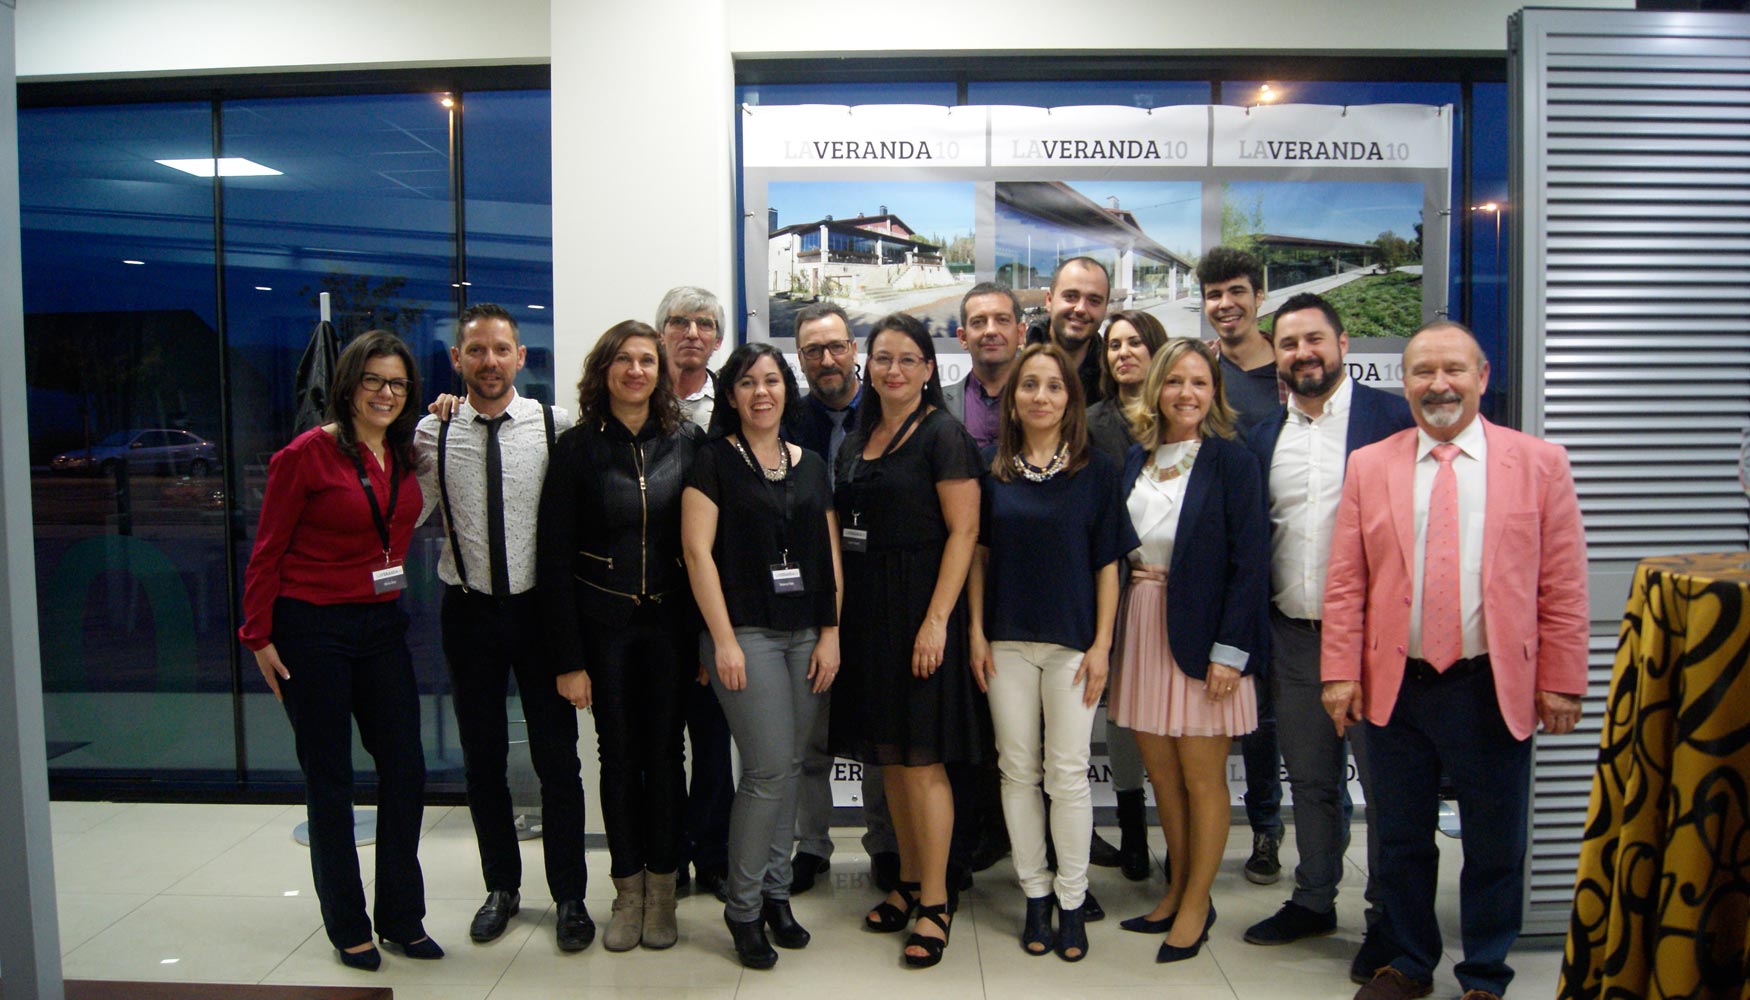 El equipo de Laveranda10 durante la inauguracin del nuevo Showroom en Castelln